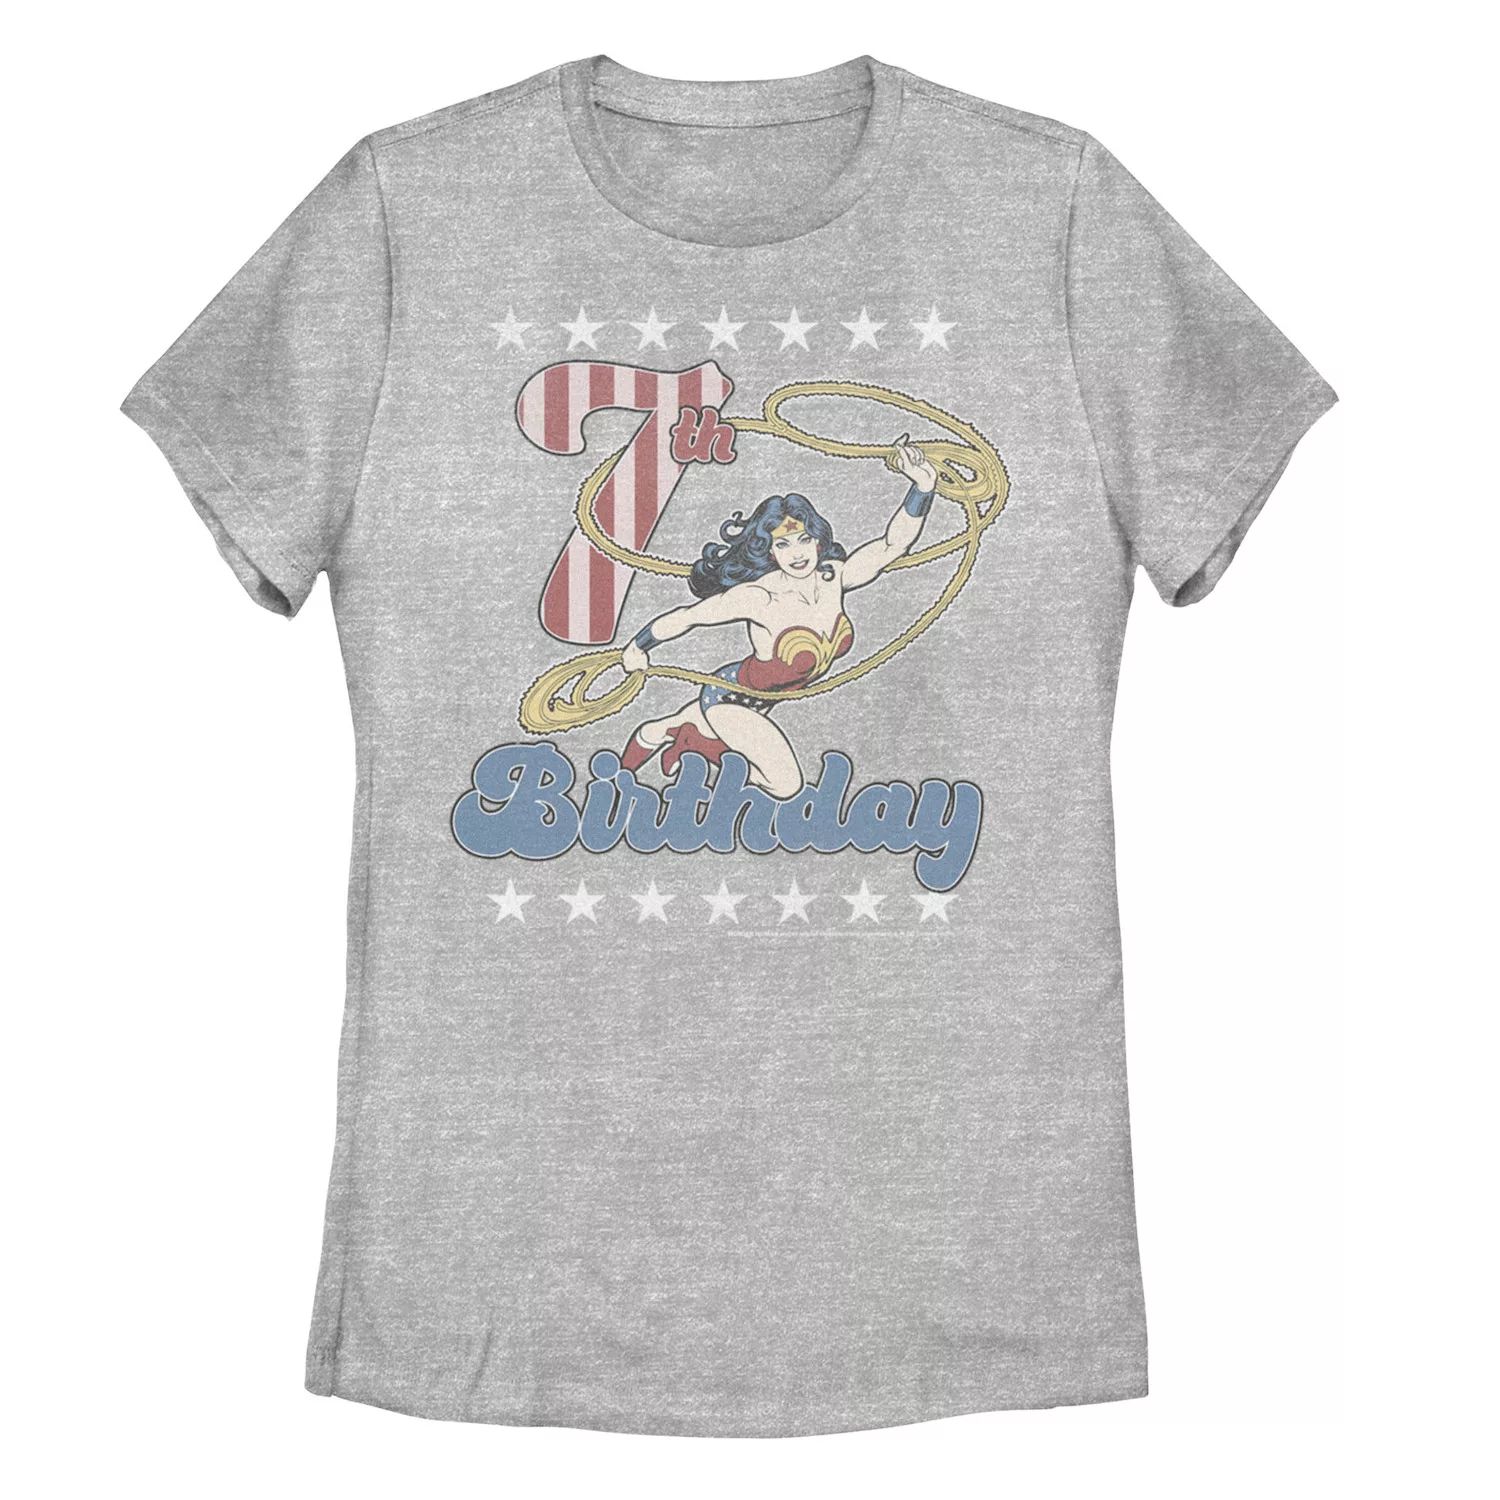 Детская футболка DC Comics «Чудо-женщина с лассо» в честь 7-летия Licensed Character детская футболка с рисунком чудо женщина dc comics licensed character